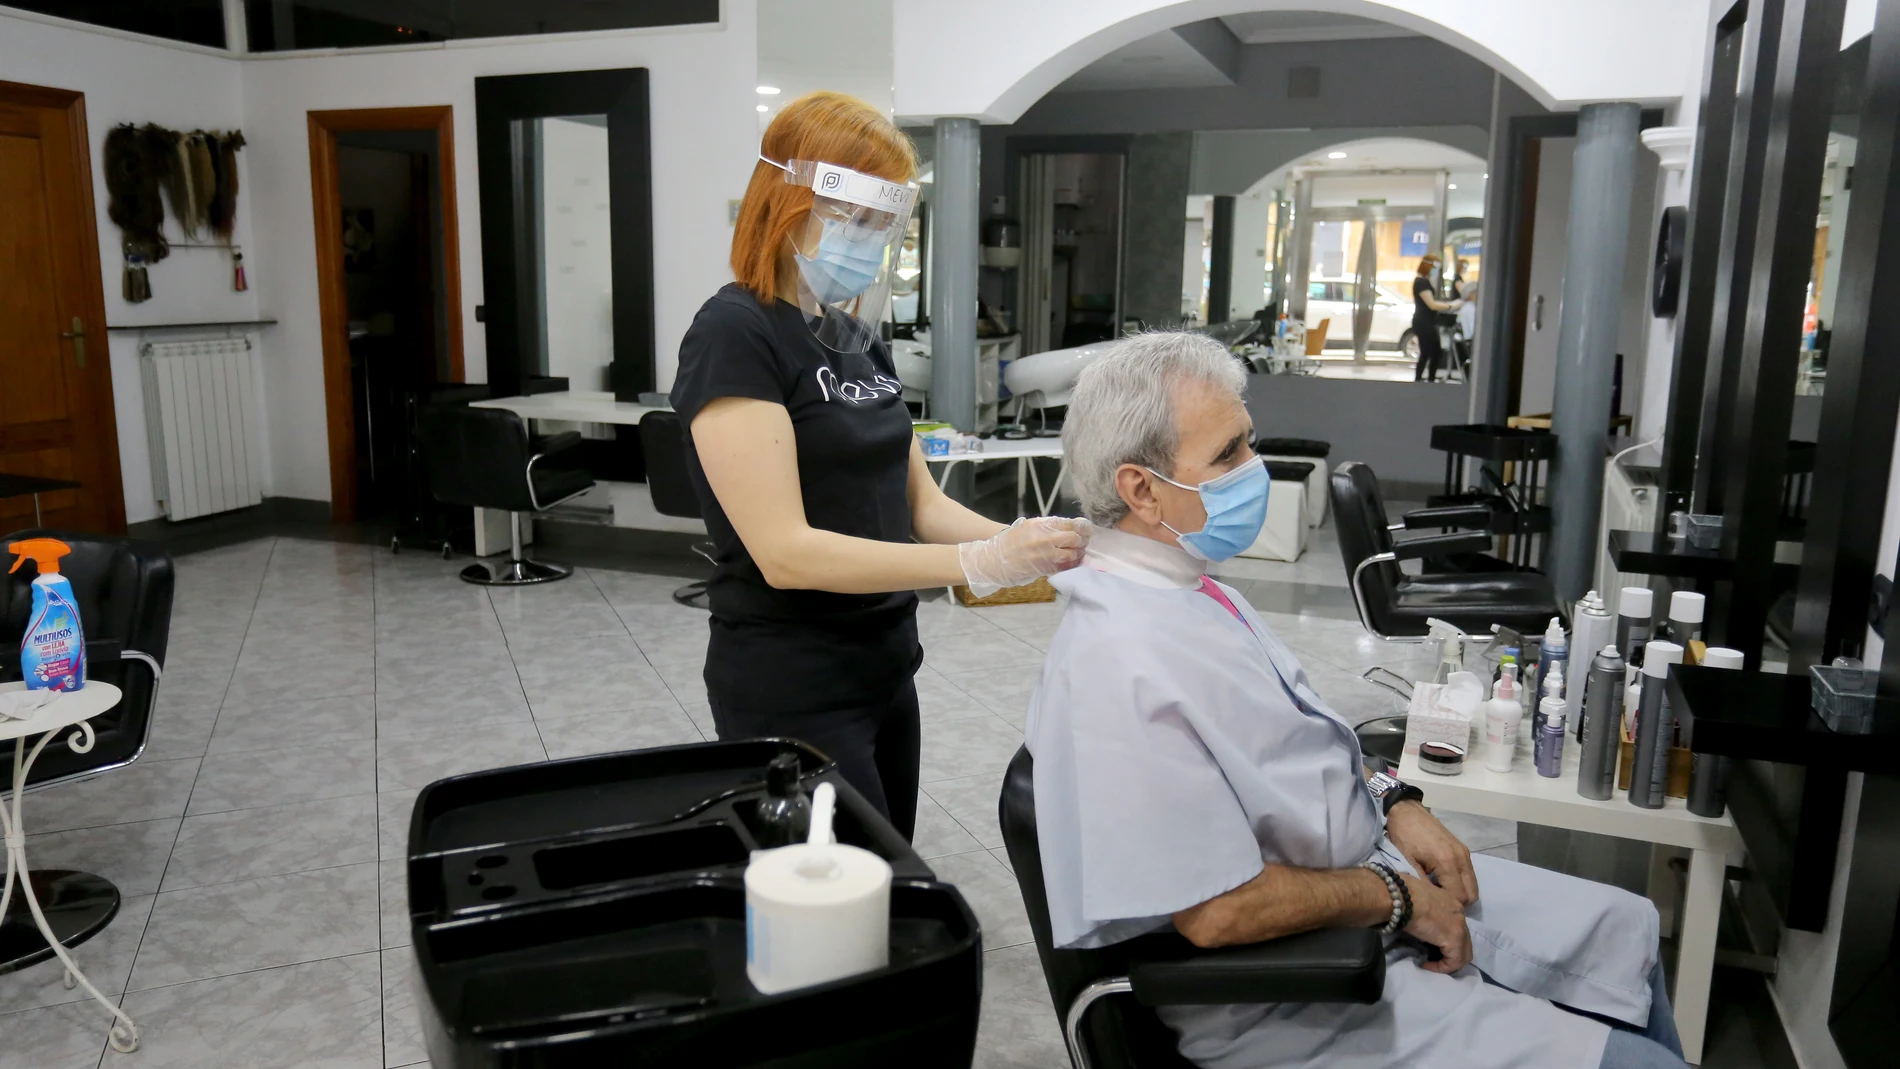 Las peluquerías han abierto en la jornada de hoy con numerosas medidas de seguridad